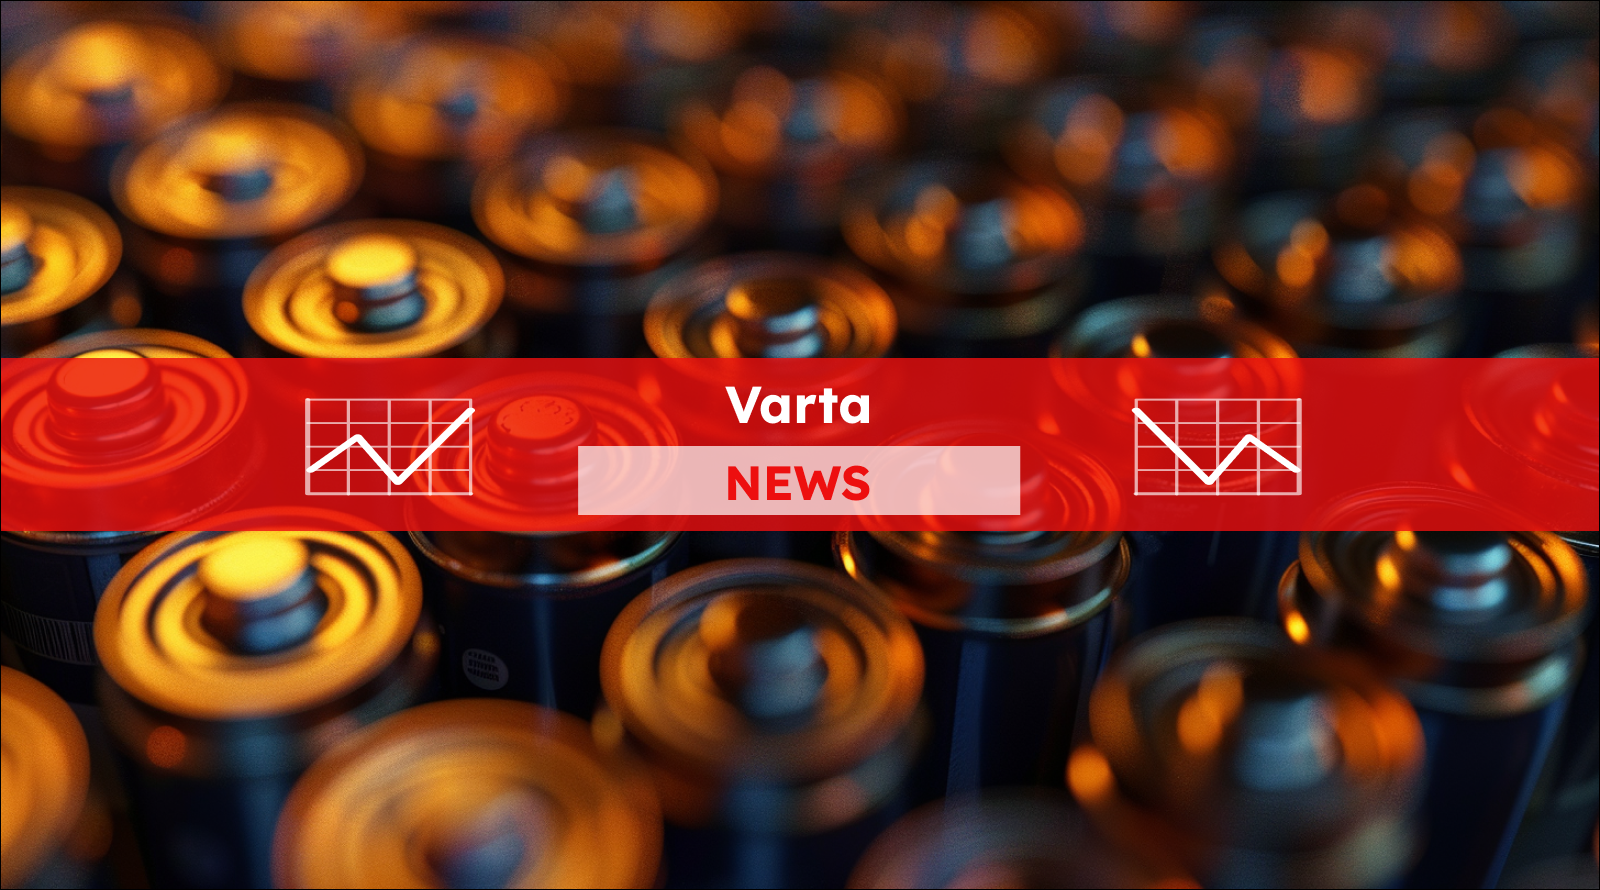 eine Nahaufnahme von zahlreichen Batterien, mit einem Varta NEWS Banner.